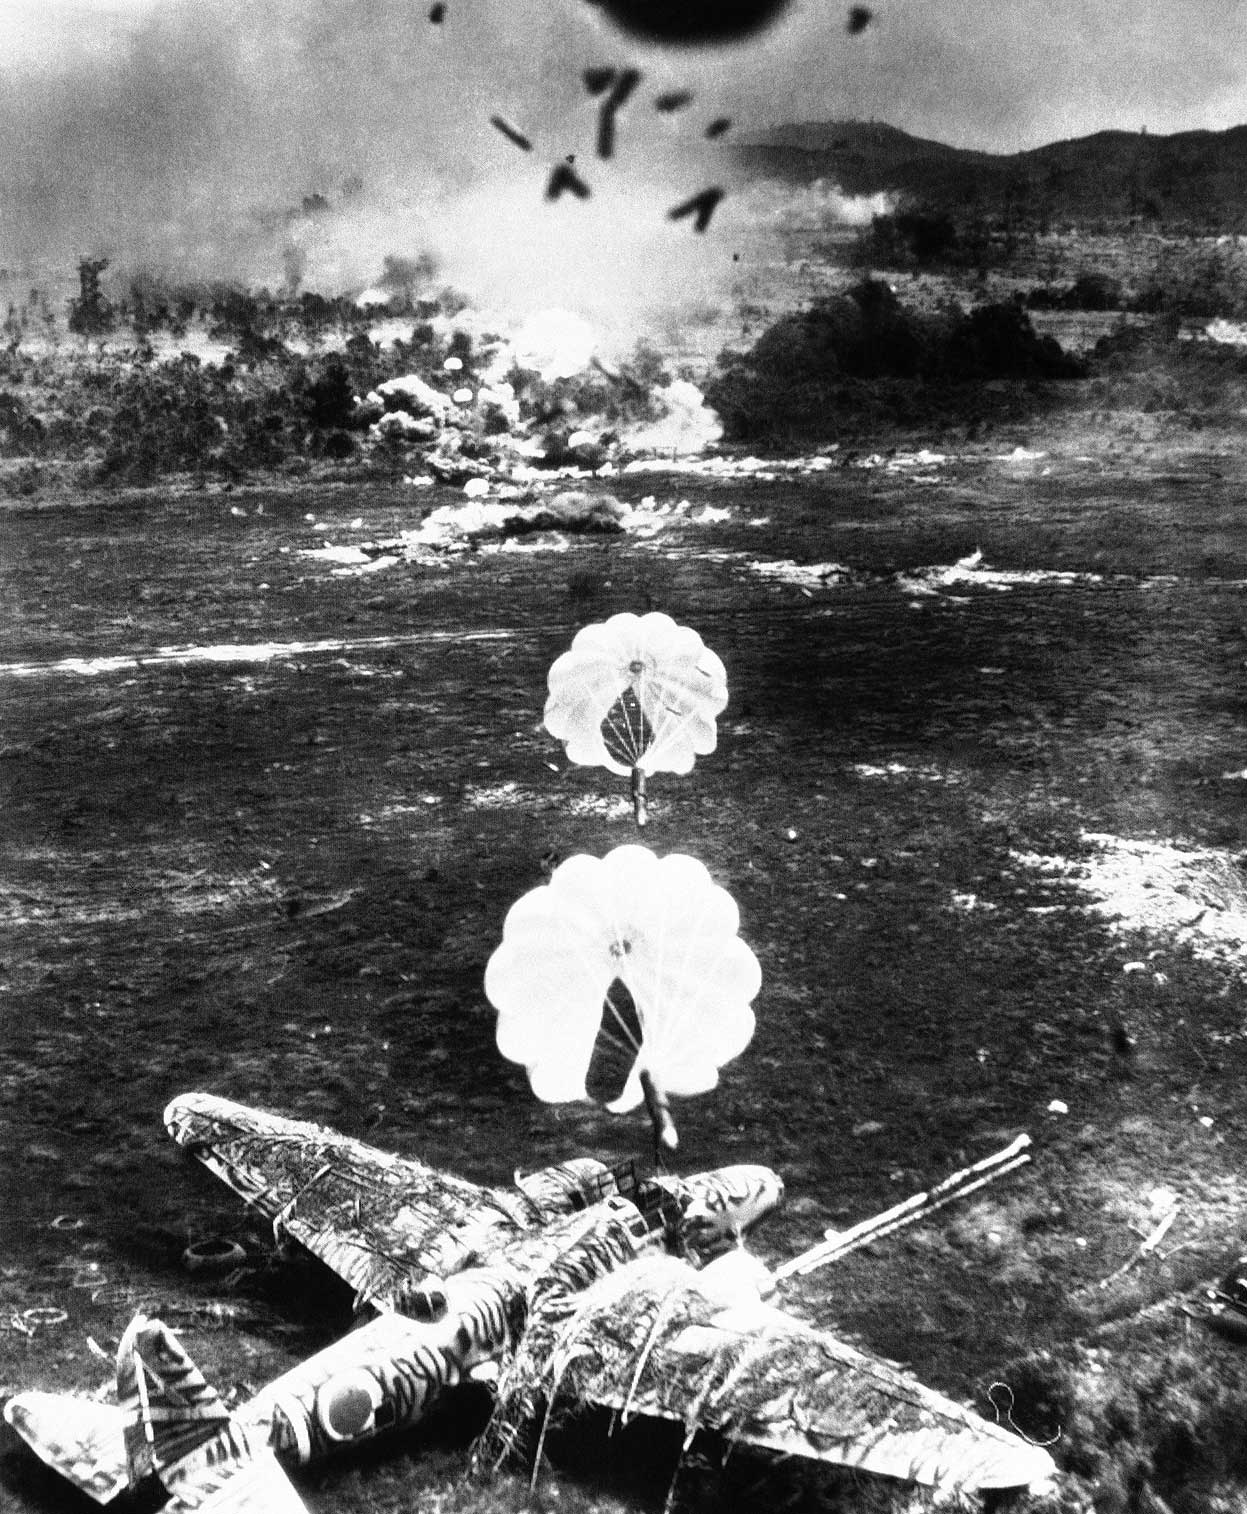 Американские парашютные бомбы поражают японские самолеты Mitsubishi Ki-21, "Sally", на аэродроме Old Namlea на острове Буру (Малайский архипелаг)